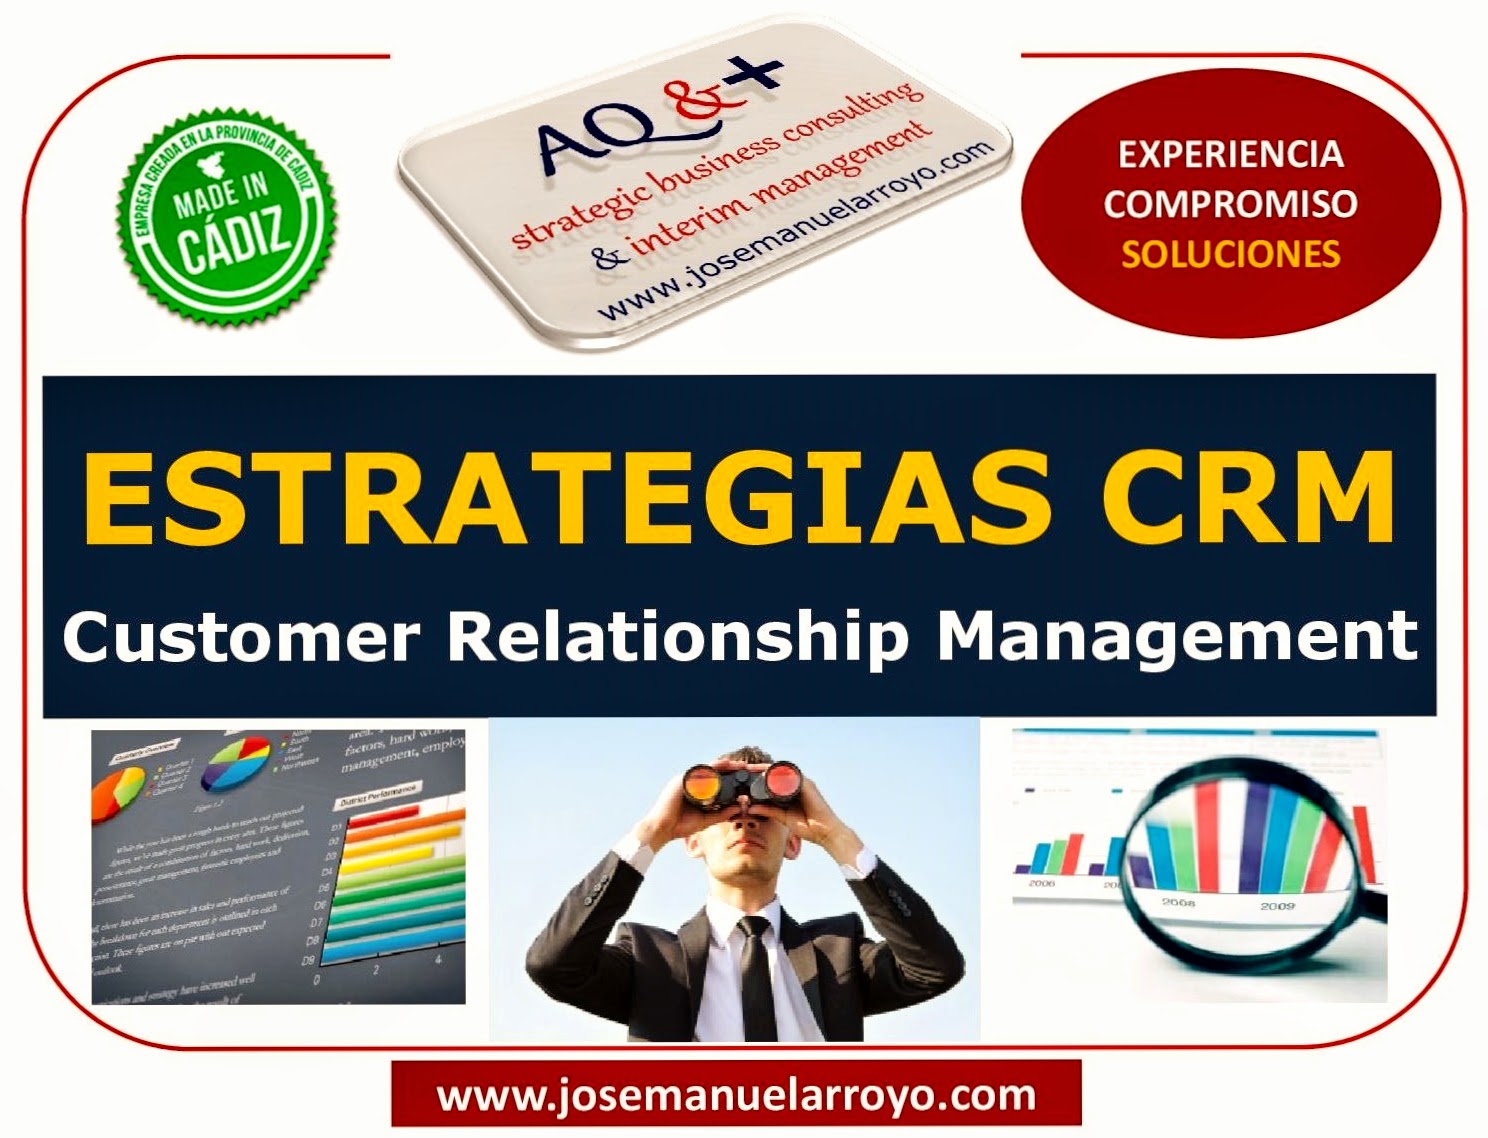 ESTRATEGIAS CRM. CUSTOMER RELATIONSHIP MANAGEMENT